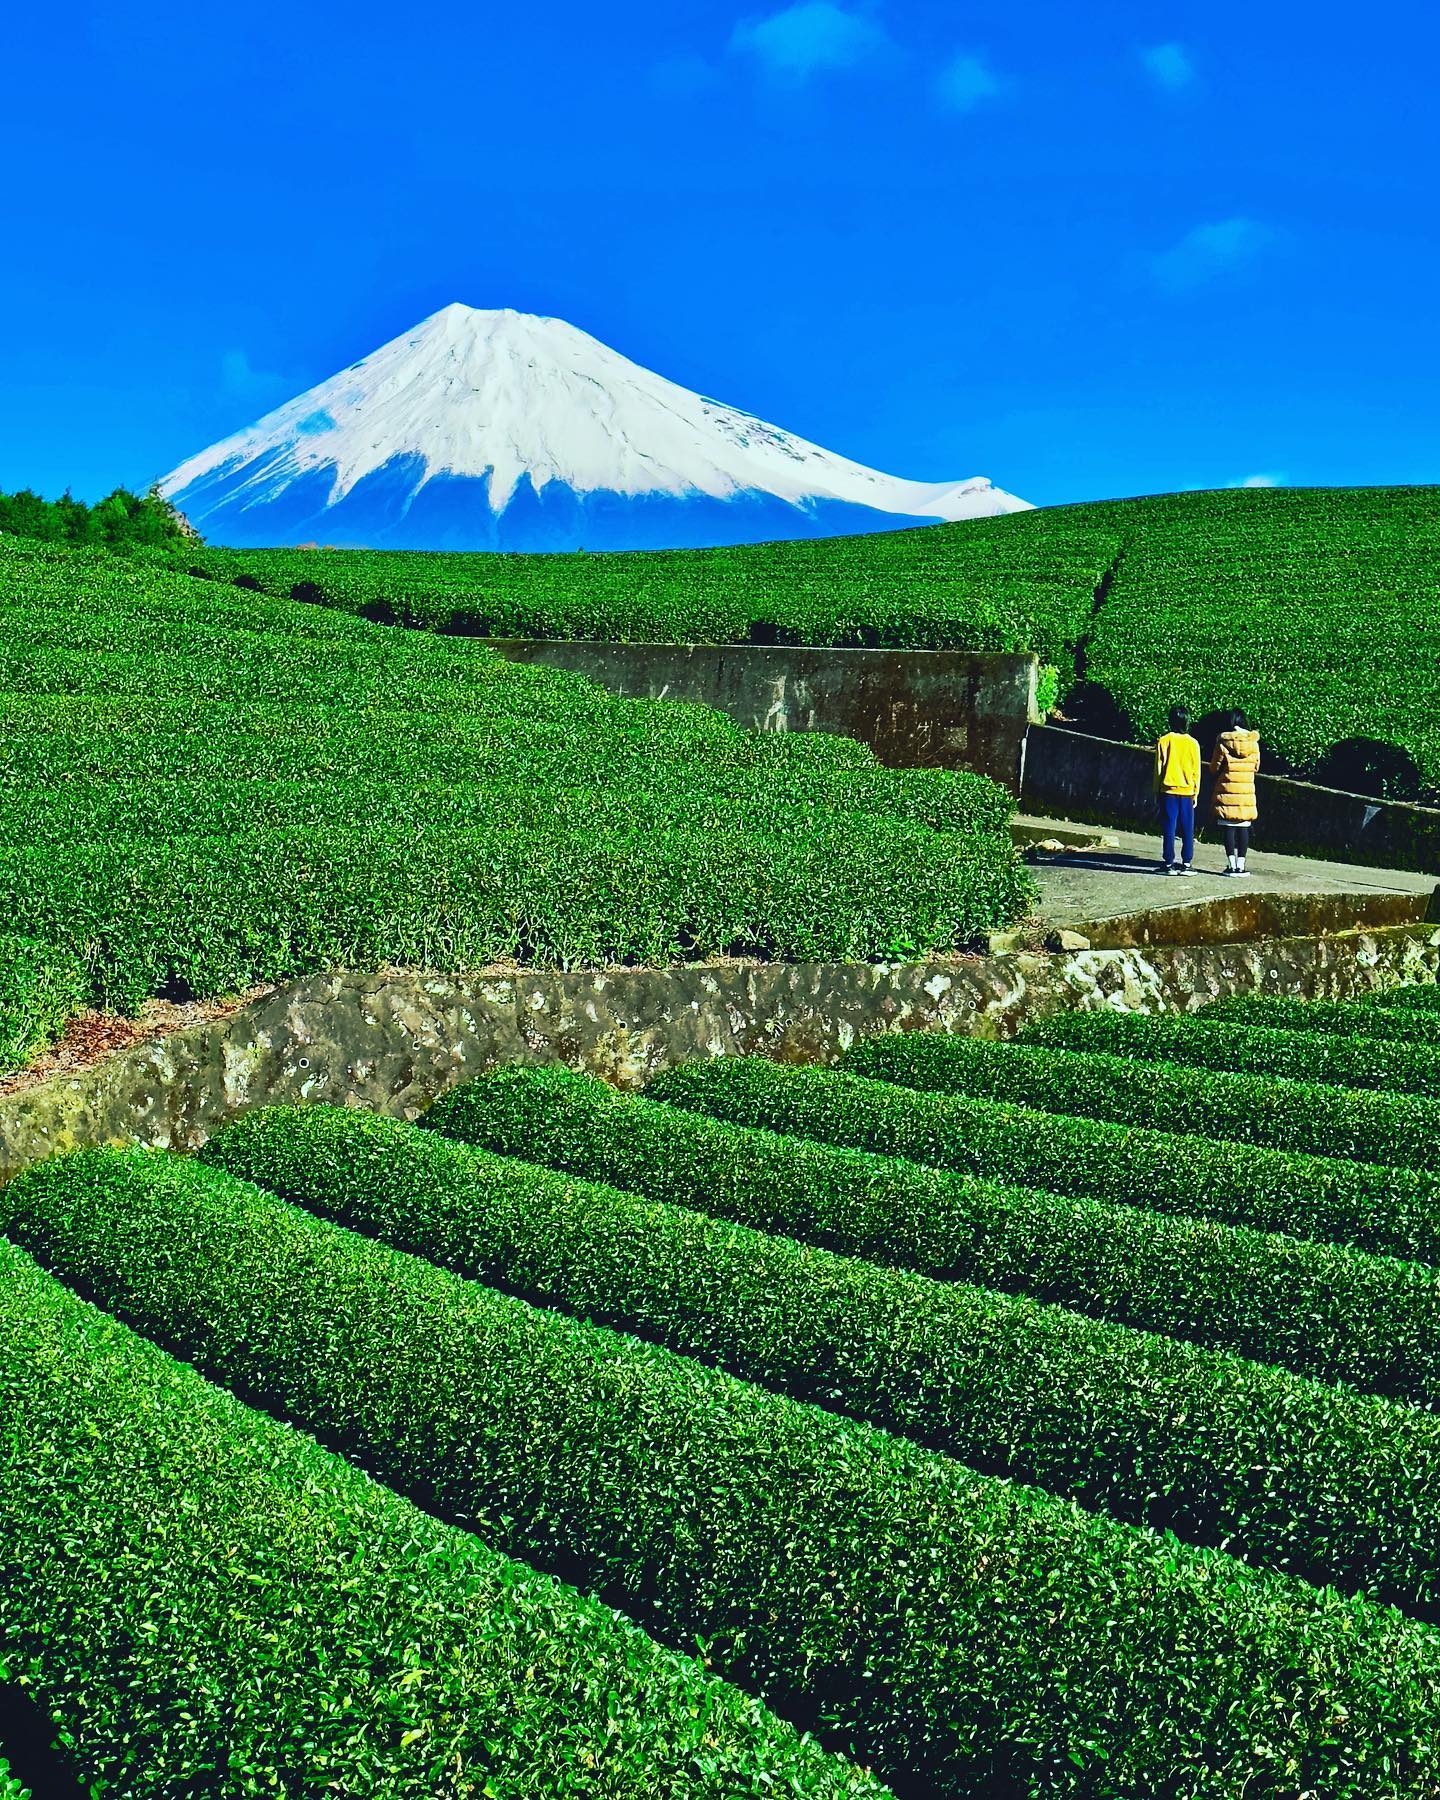 🇯🇵 【靜岡 Shizuoka】大淵笹場
🗻 「大淵笹場」是知名的富士山眺望景點，以高低錯落的翠綠茶田與富士山交織的絕景知名
🌞冬季日本天際通常較為清澈湛藍，加上白雪富士山山頭，色彩更為豐富，是拍攝富士山的好機會。
🍵 日本的茶鄉静岡，出產日本40％的茶葉。茶田風光遠近馳名，許多電視節目都曾前來取景，尤其每年五月新綠時刻最為著名

#japantravel #shizuoka #mtfuji #obuchisasaba #靜岡 #大淵笹場 #富士山 #把世界當教室🌍 #travelwithmikeanna